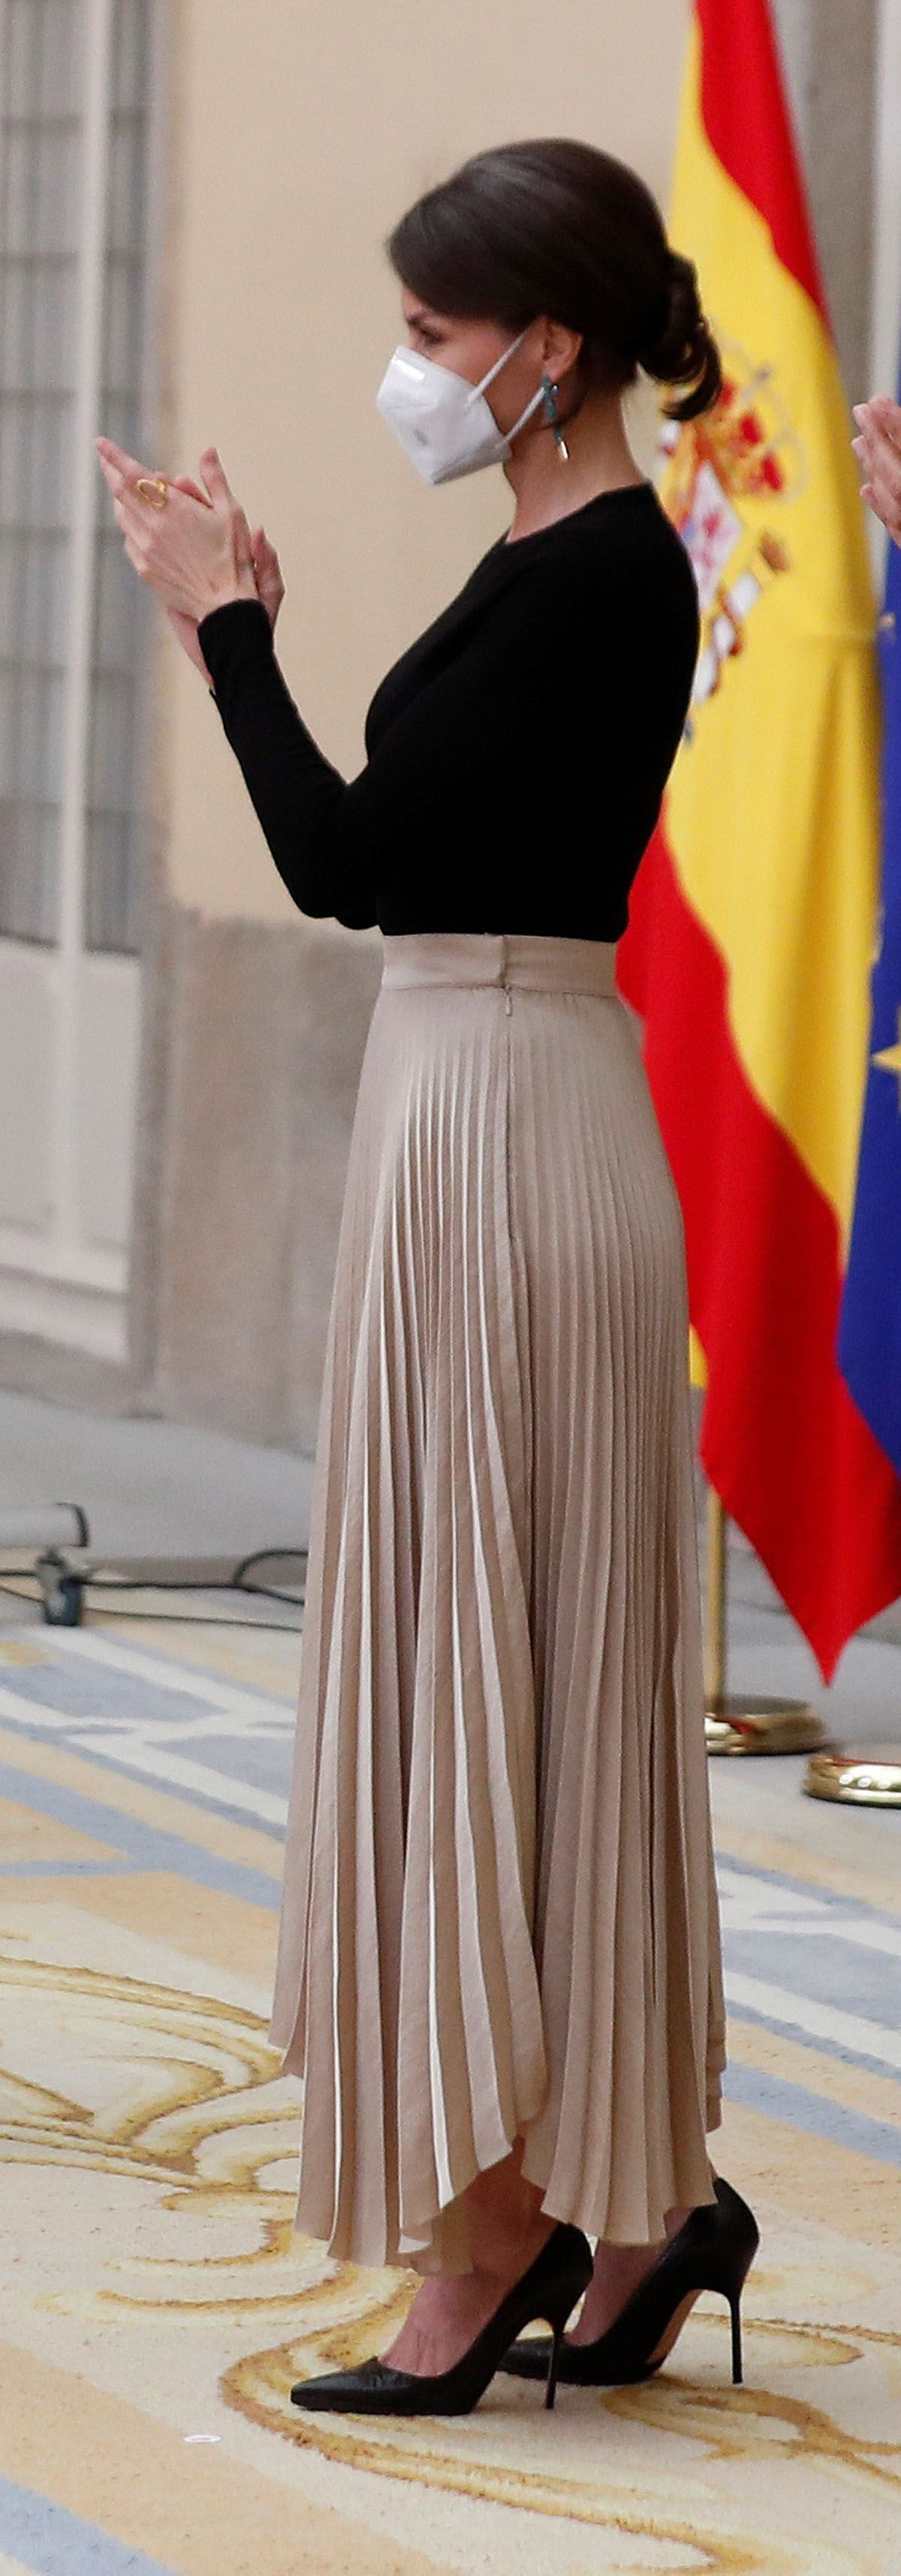 La reina Letizia tiene la falda larga plisada dorada perfecta de Massimo  Dutti de tus noches de verano